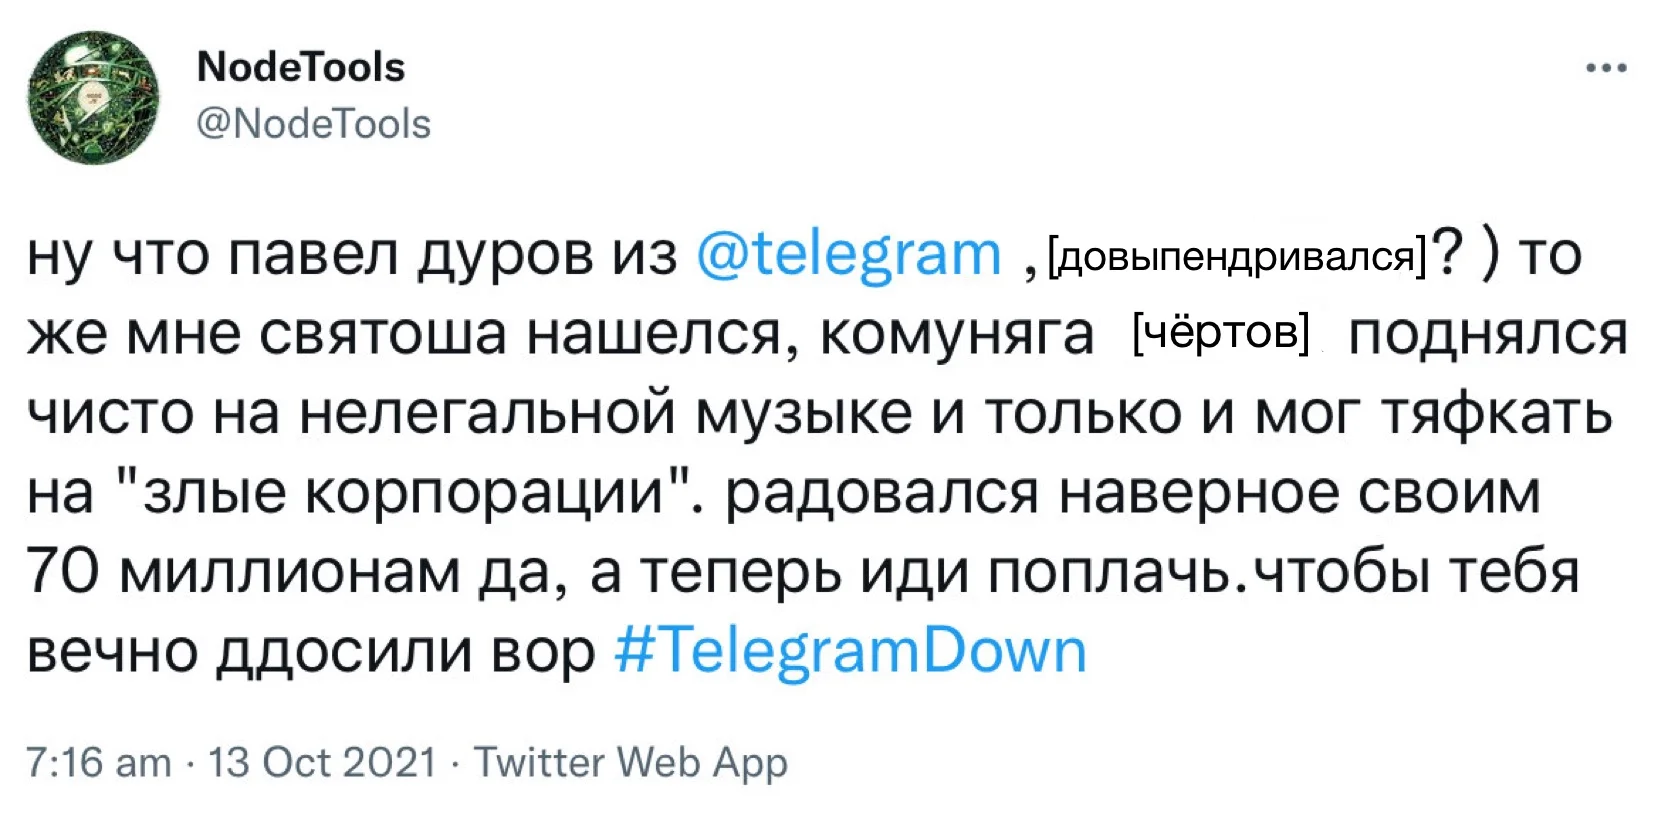 «Дуров, верни стену»: как пользователи отреагировали на сбой в Telegram - фото 2